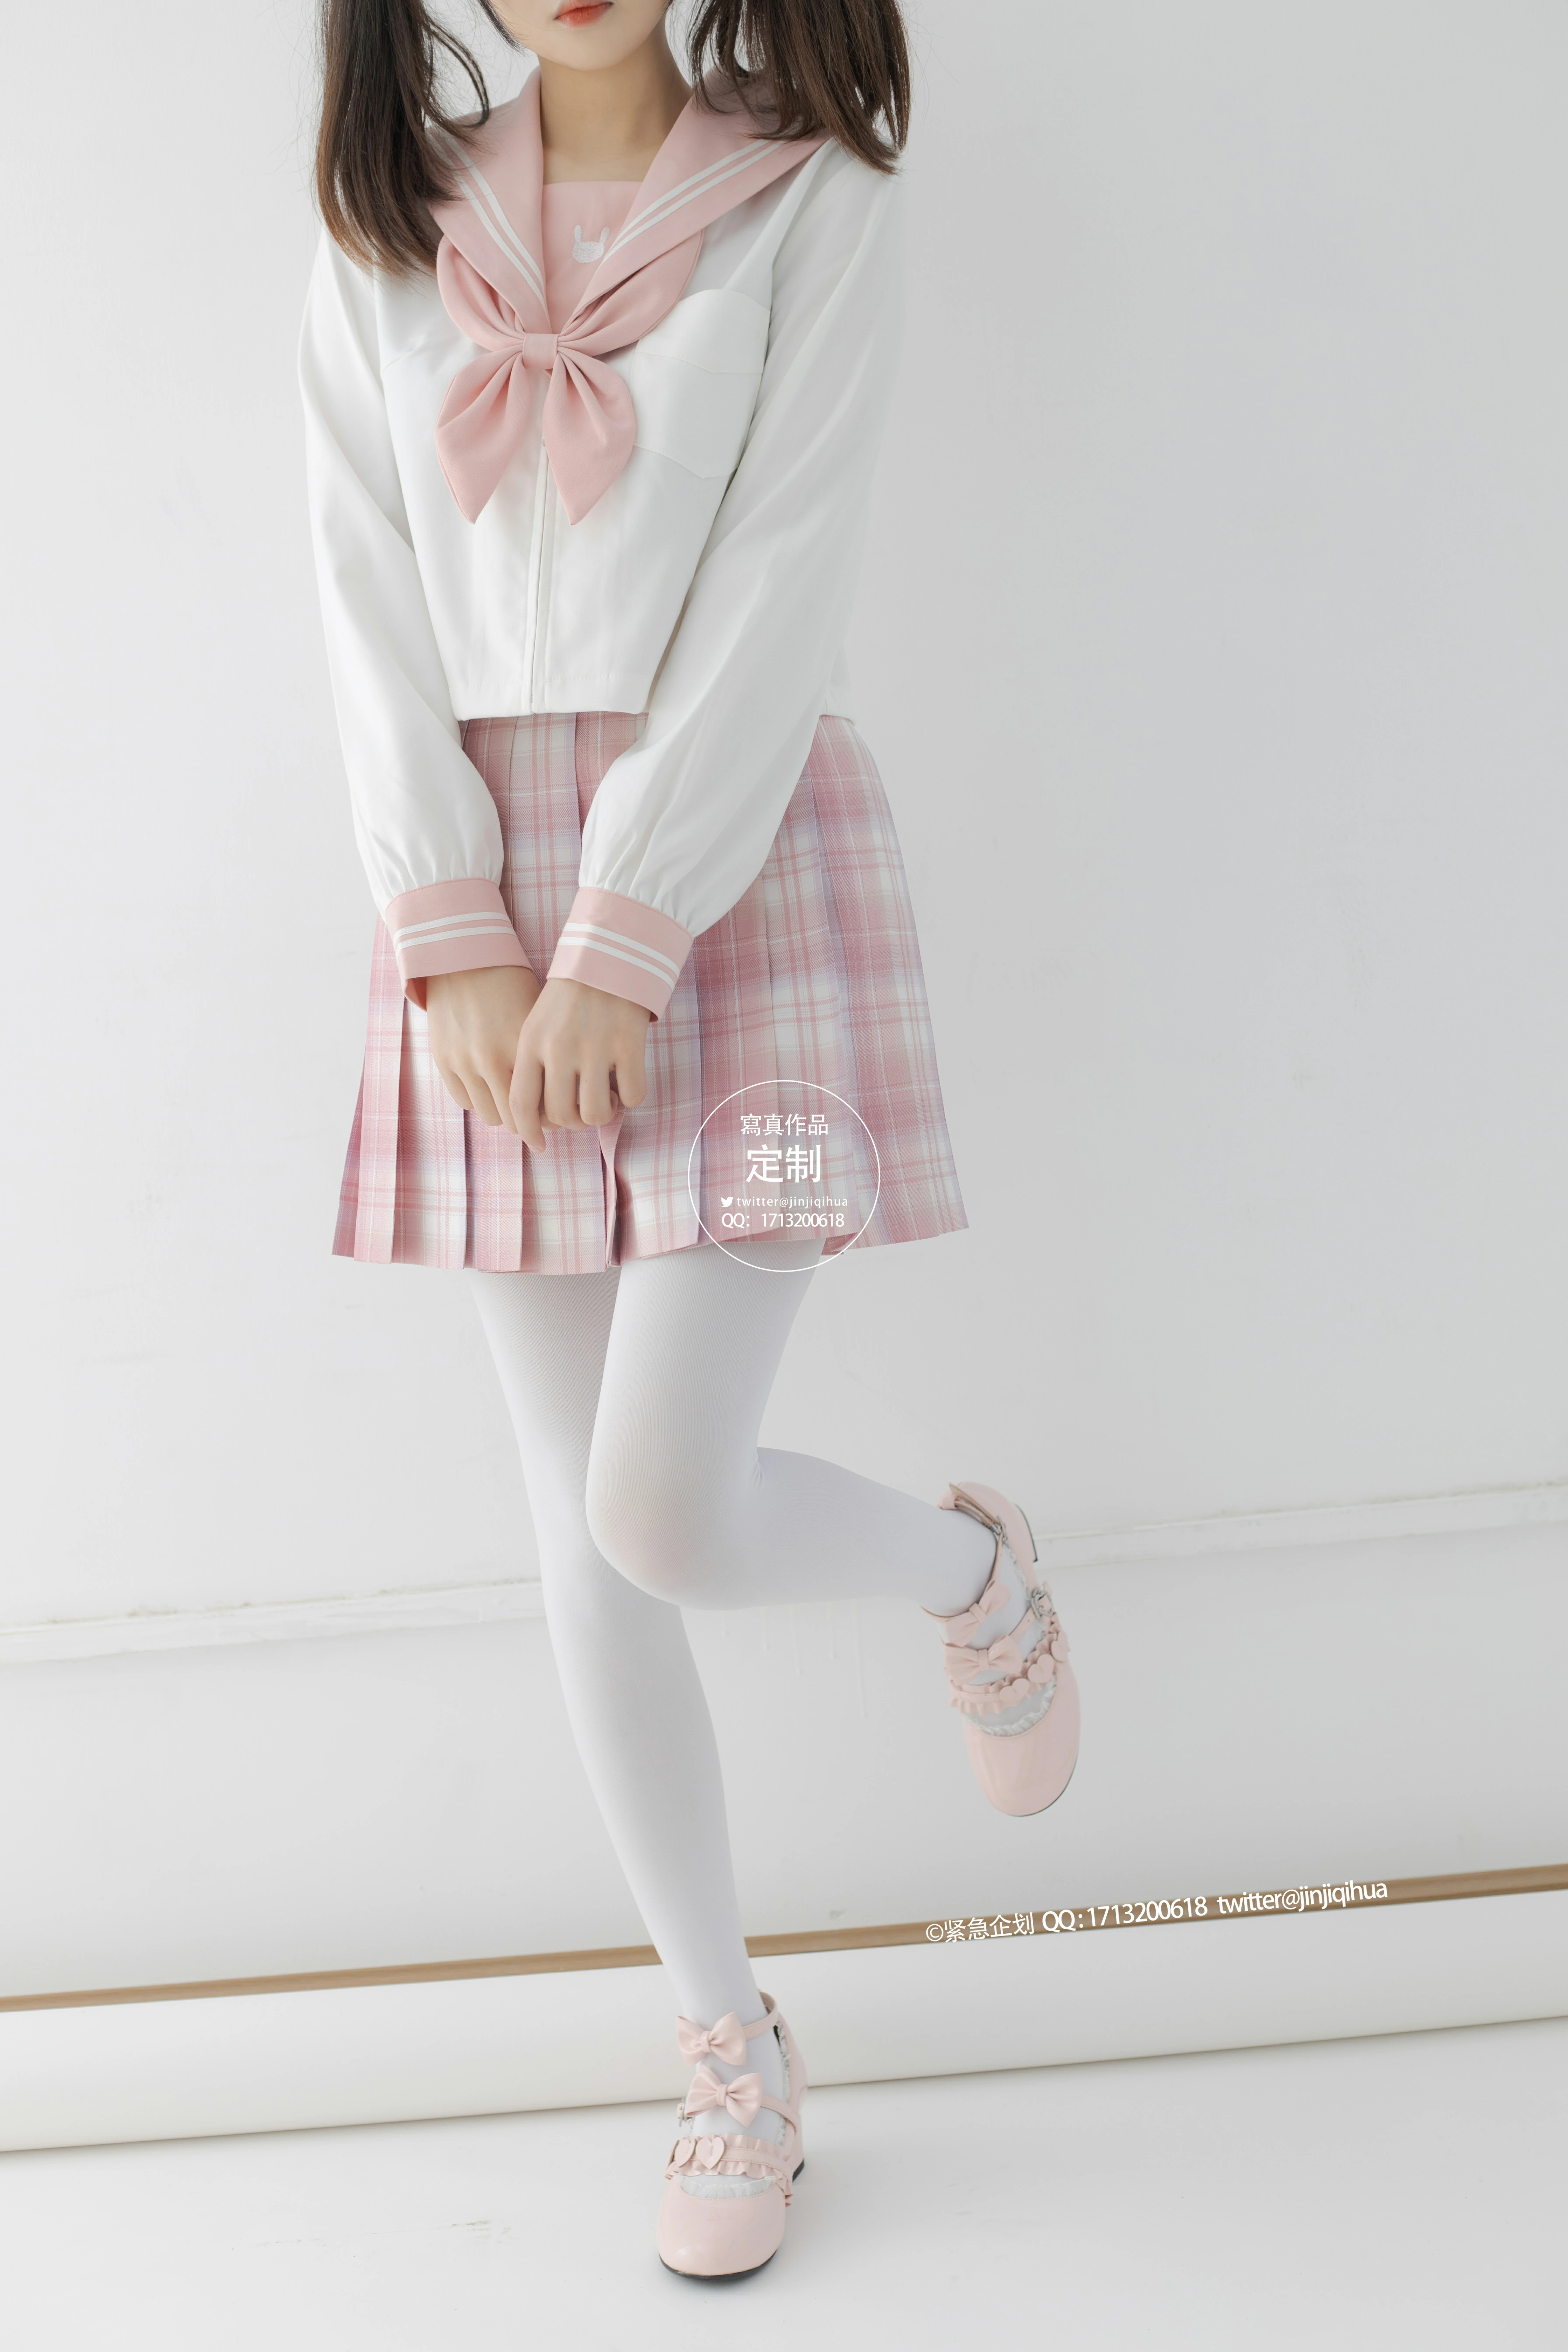 [紧急企划]G-001 清纯萝莉小学妹 白色JK制服与粉色短裙加白色丝袜美腿性感私房写真集,